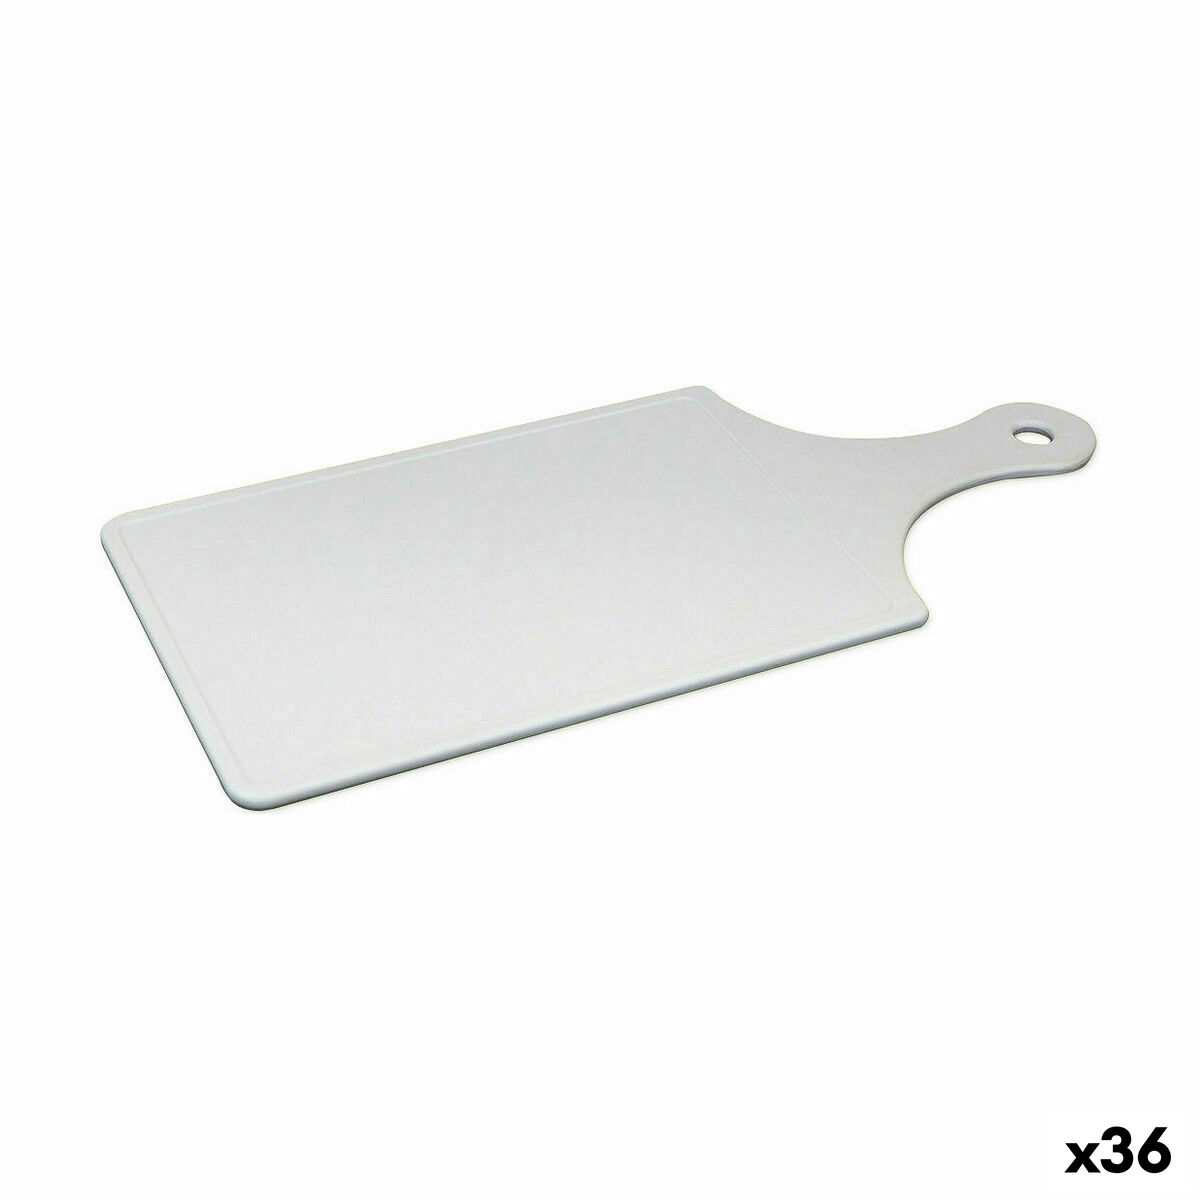 Cutting board Dem 32 x 14,5 x 0,6 cm (36 Units)